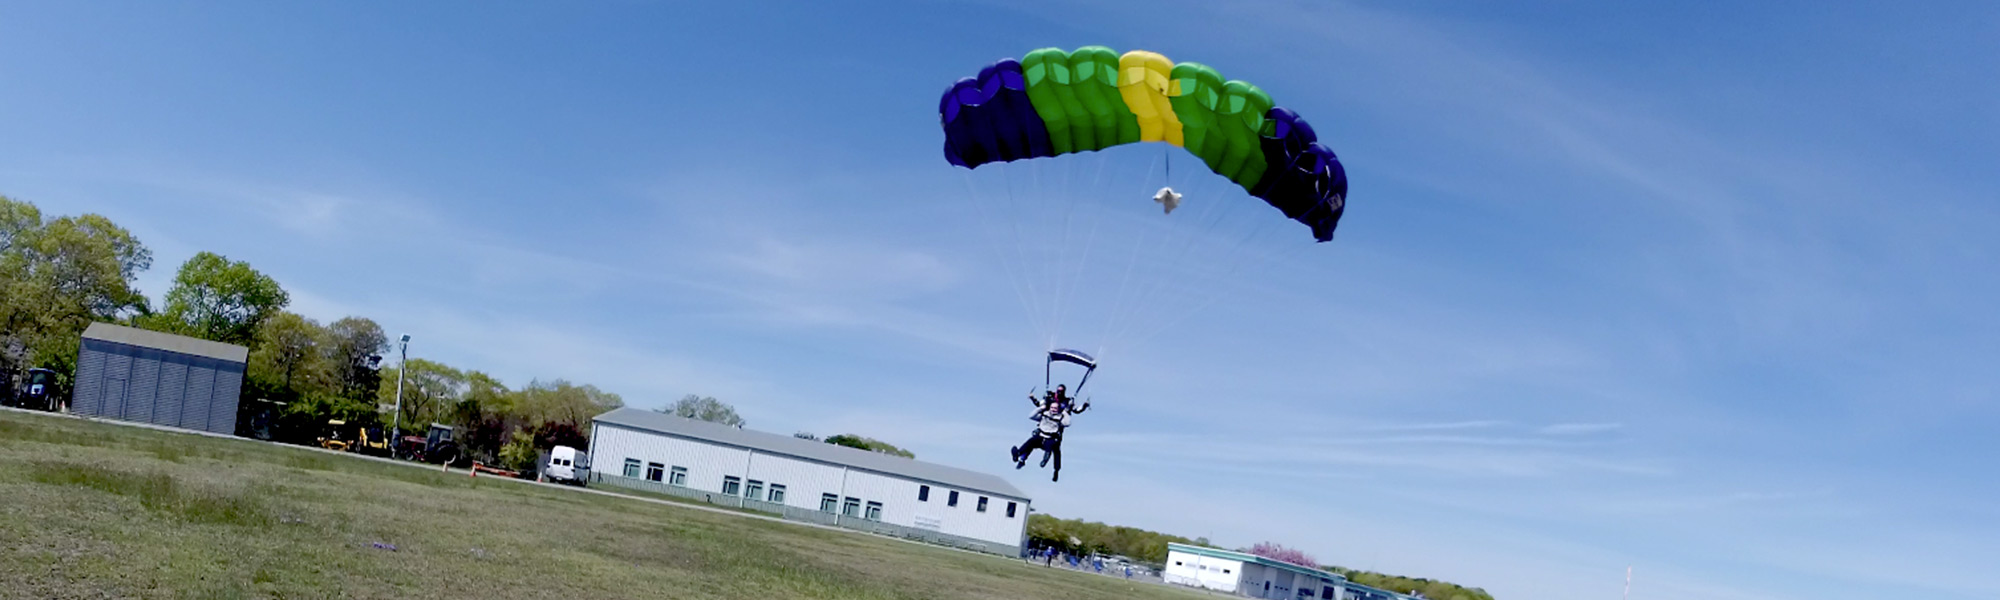 Skydiving Parachutes